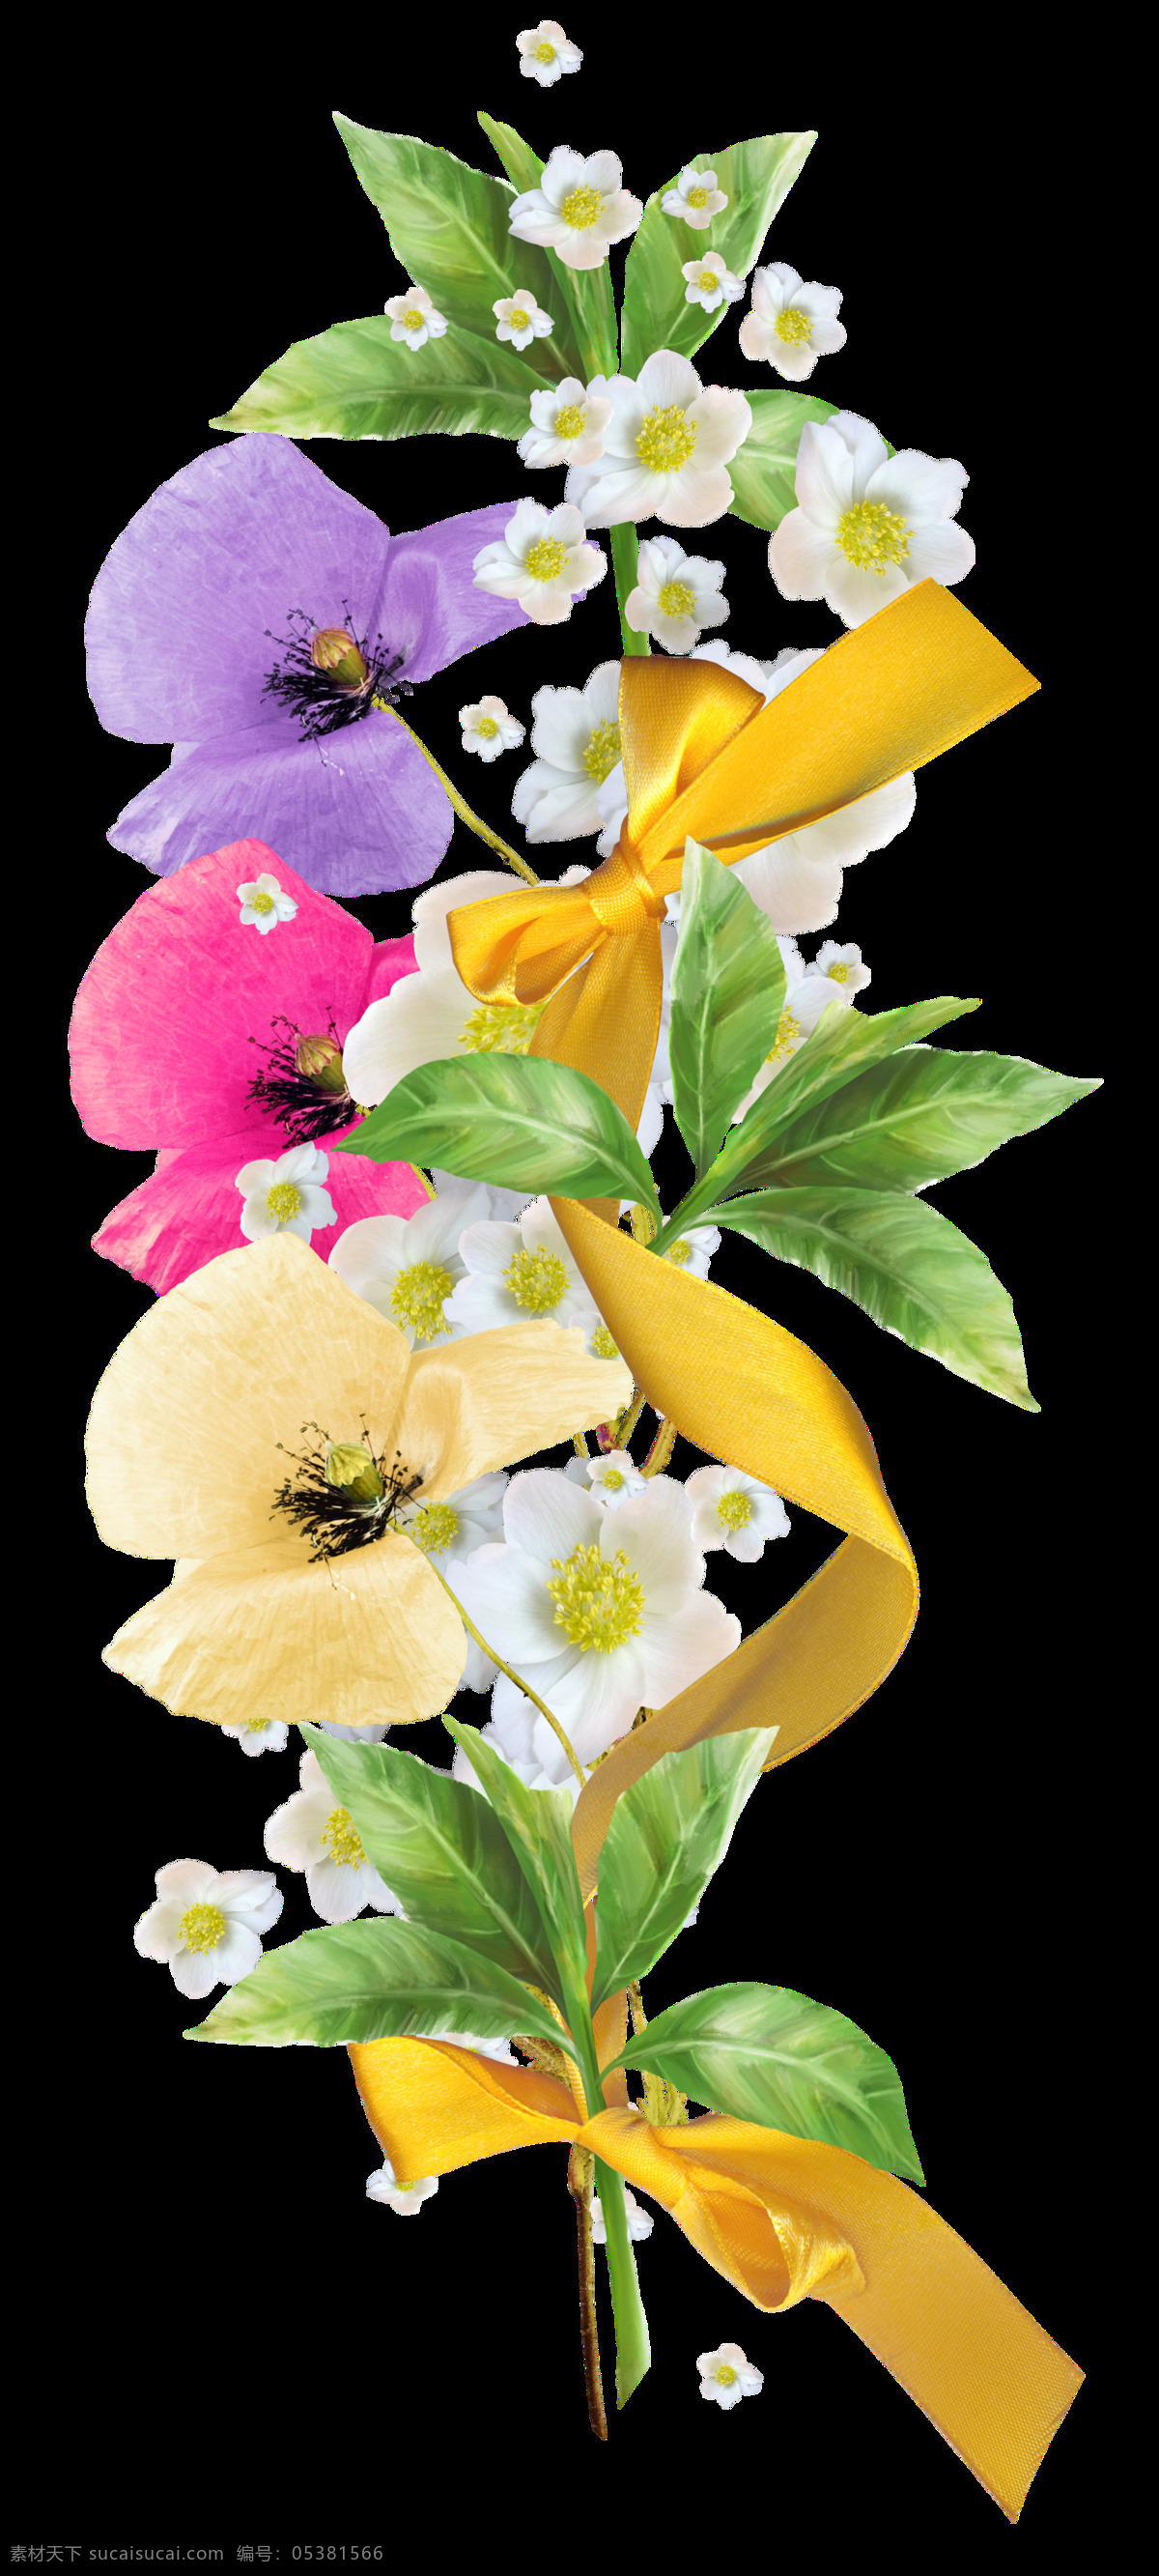 手绘 水彩 多彩 鲜花 花束 透明 黄色 三朵花 绿叶 丝带结 透明素材 免扣素材 装饰图片